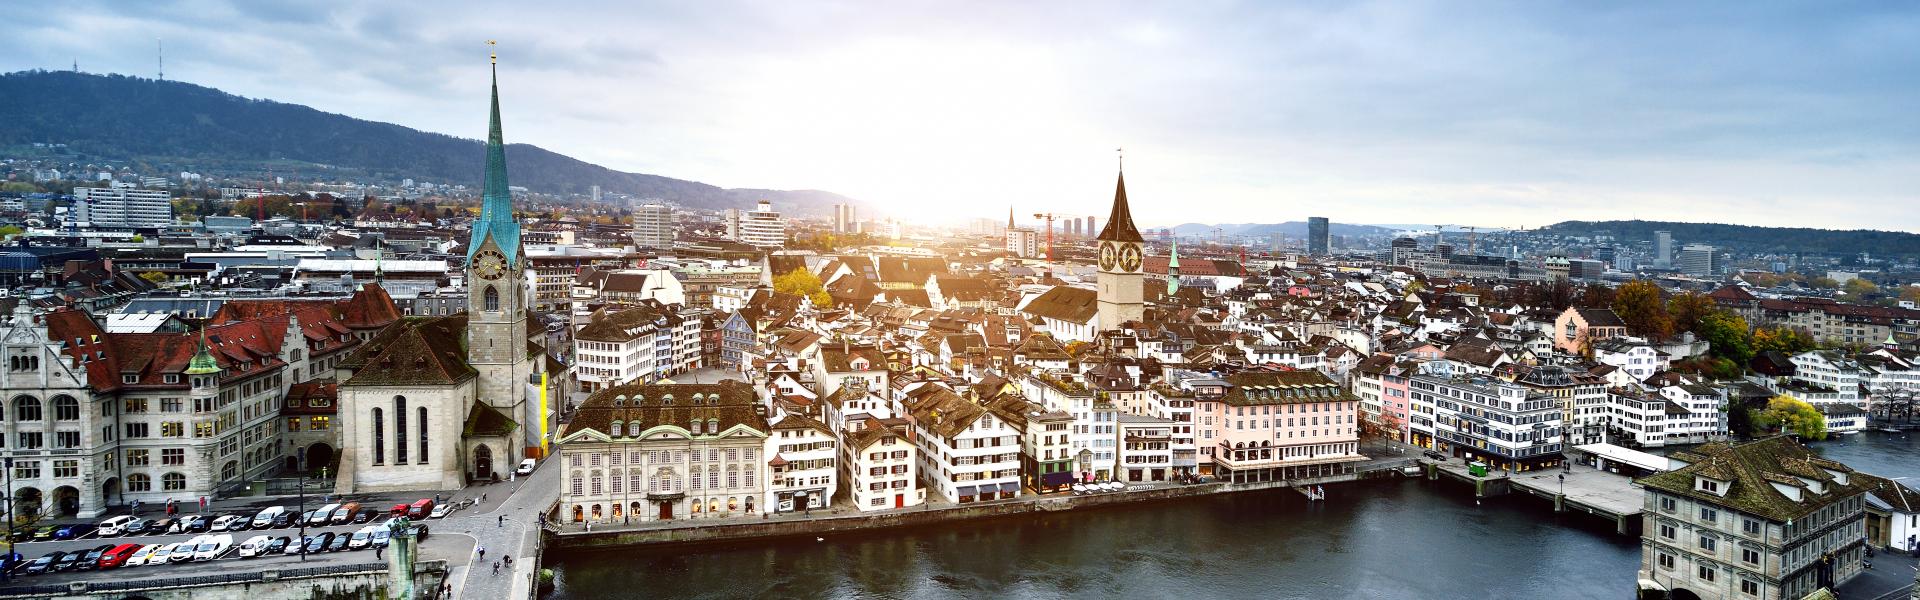 Popular Destination: Zurich, Switzerland  Blog